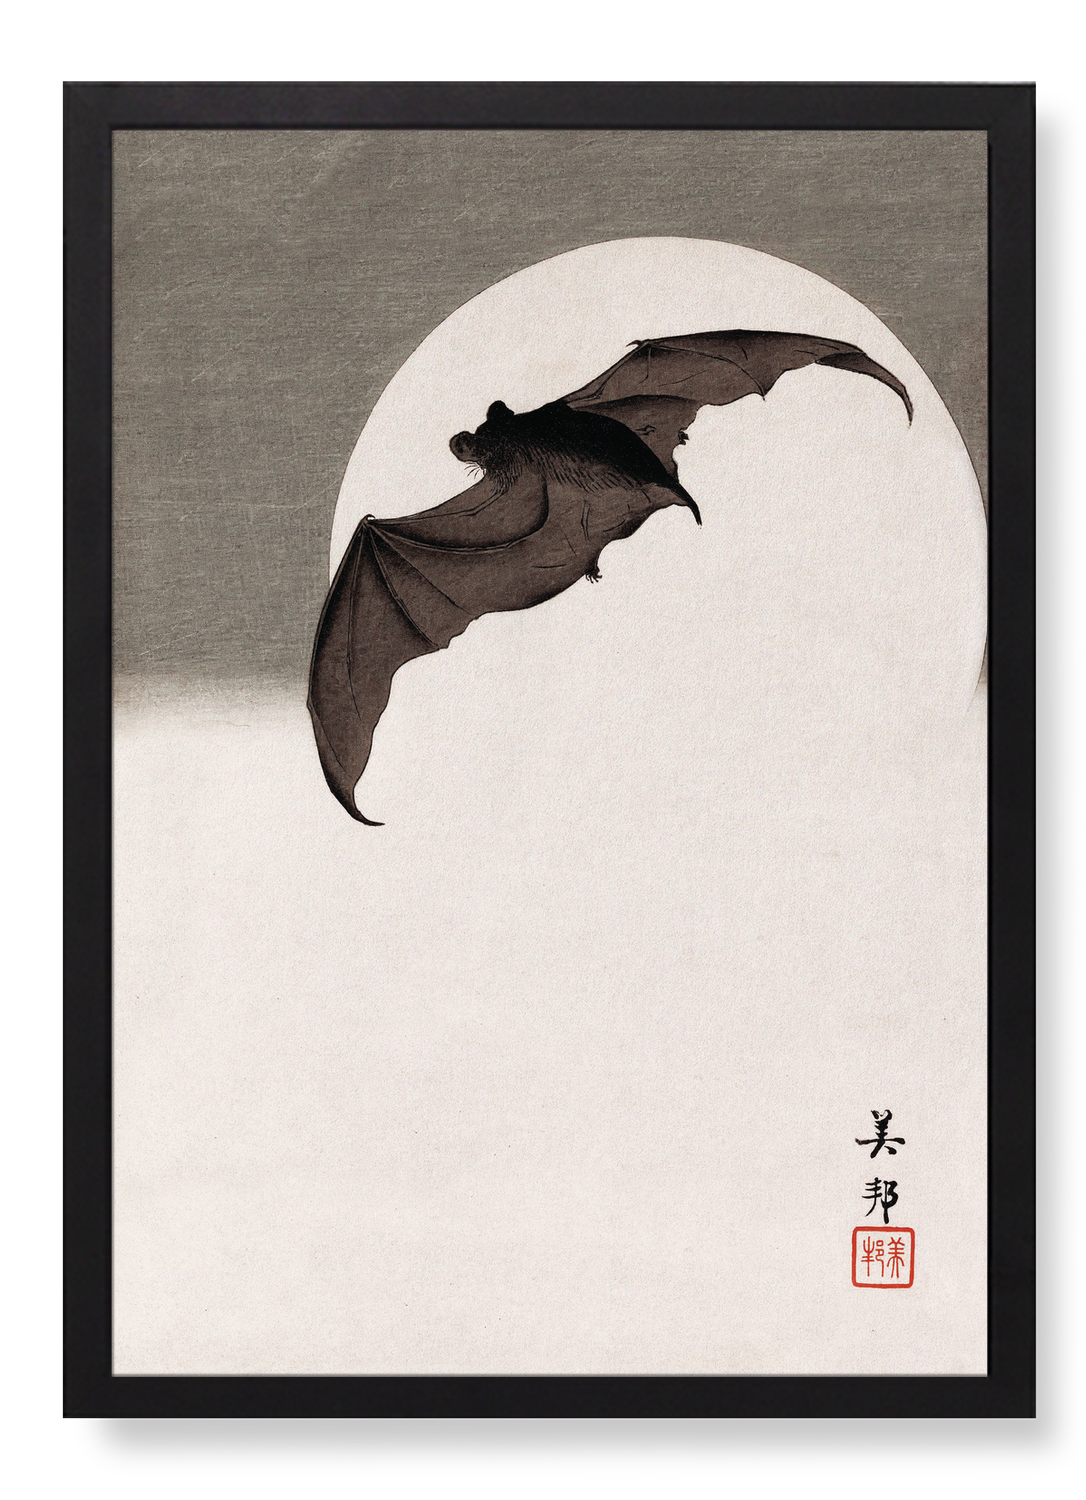 BAT IN FULL MOON (C.1910)